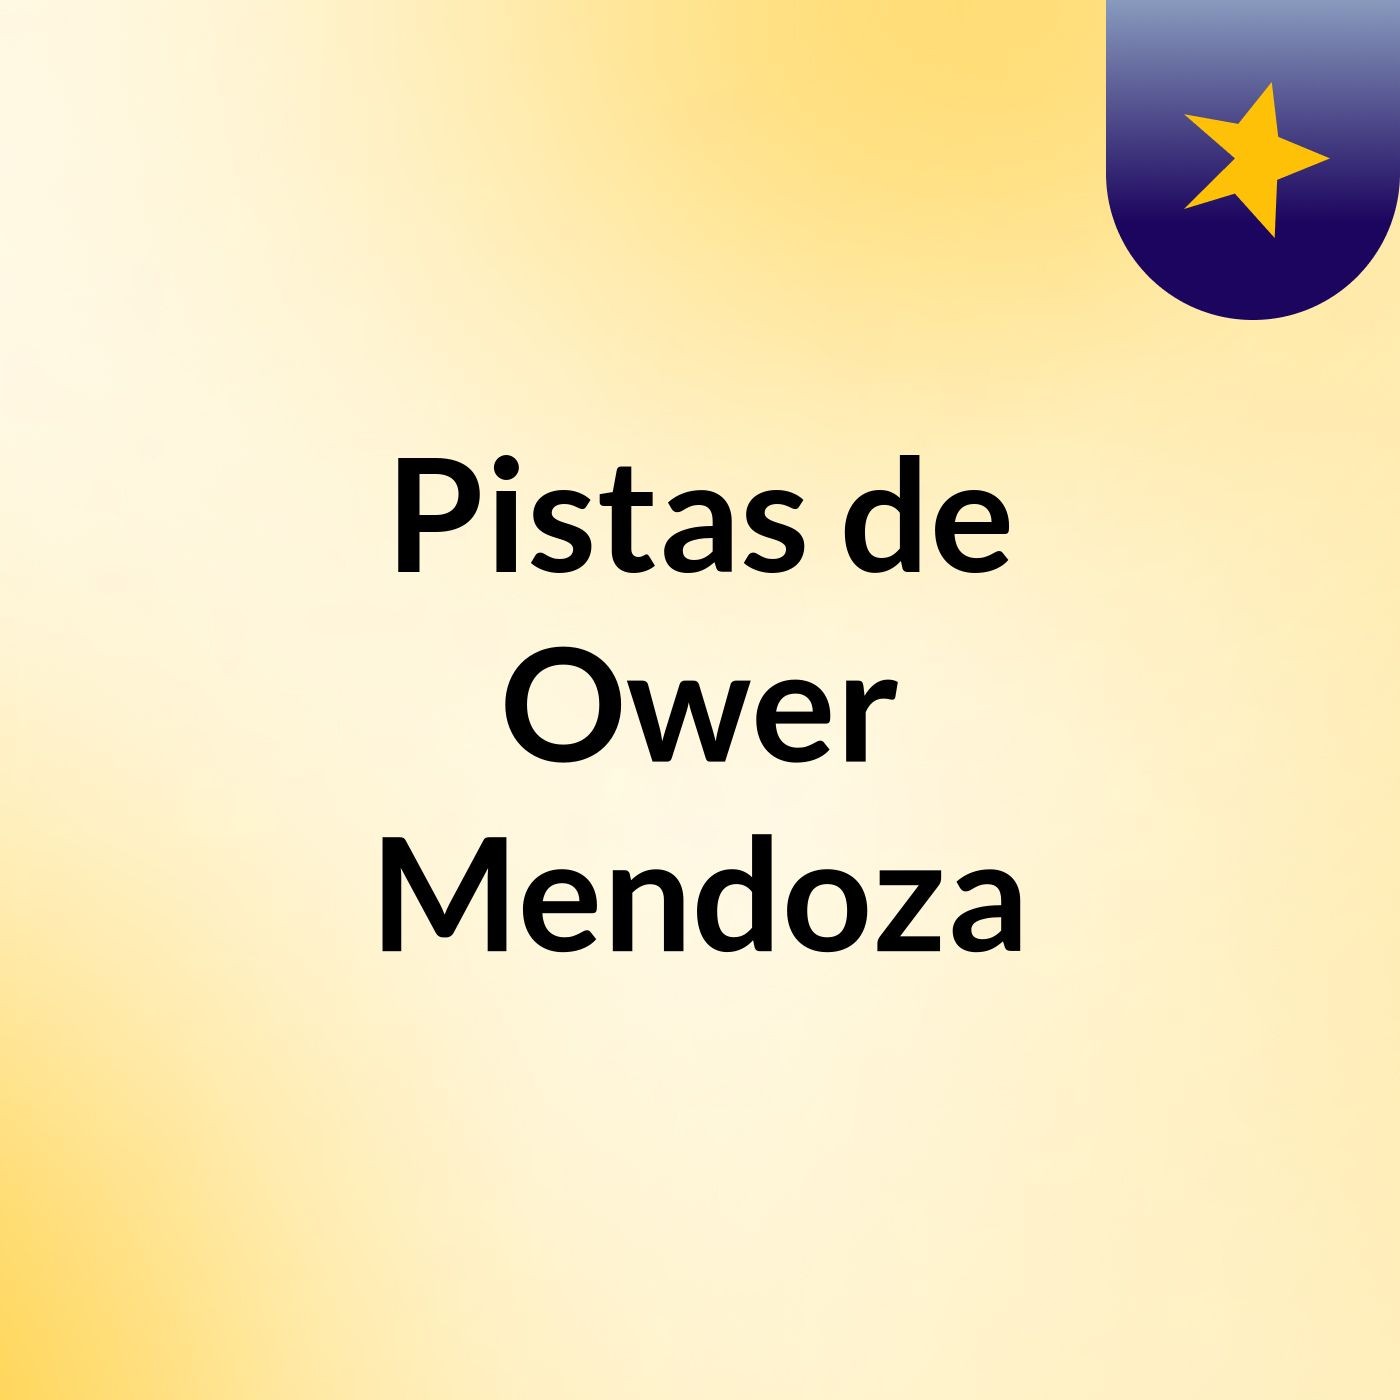 Pistas de Ower Mendoza